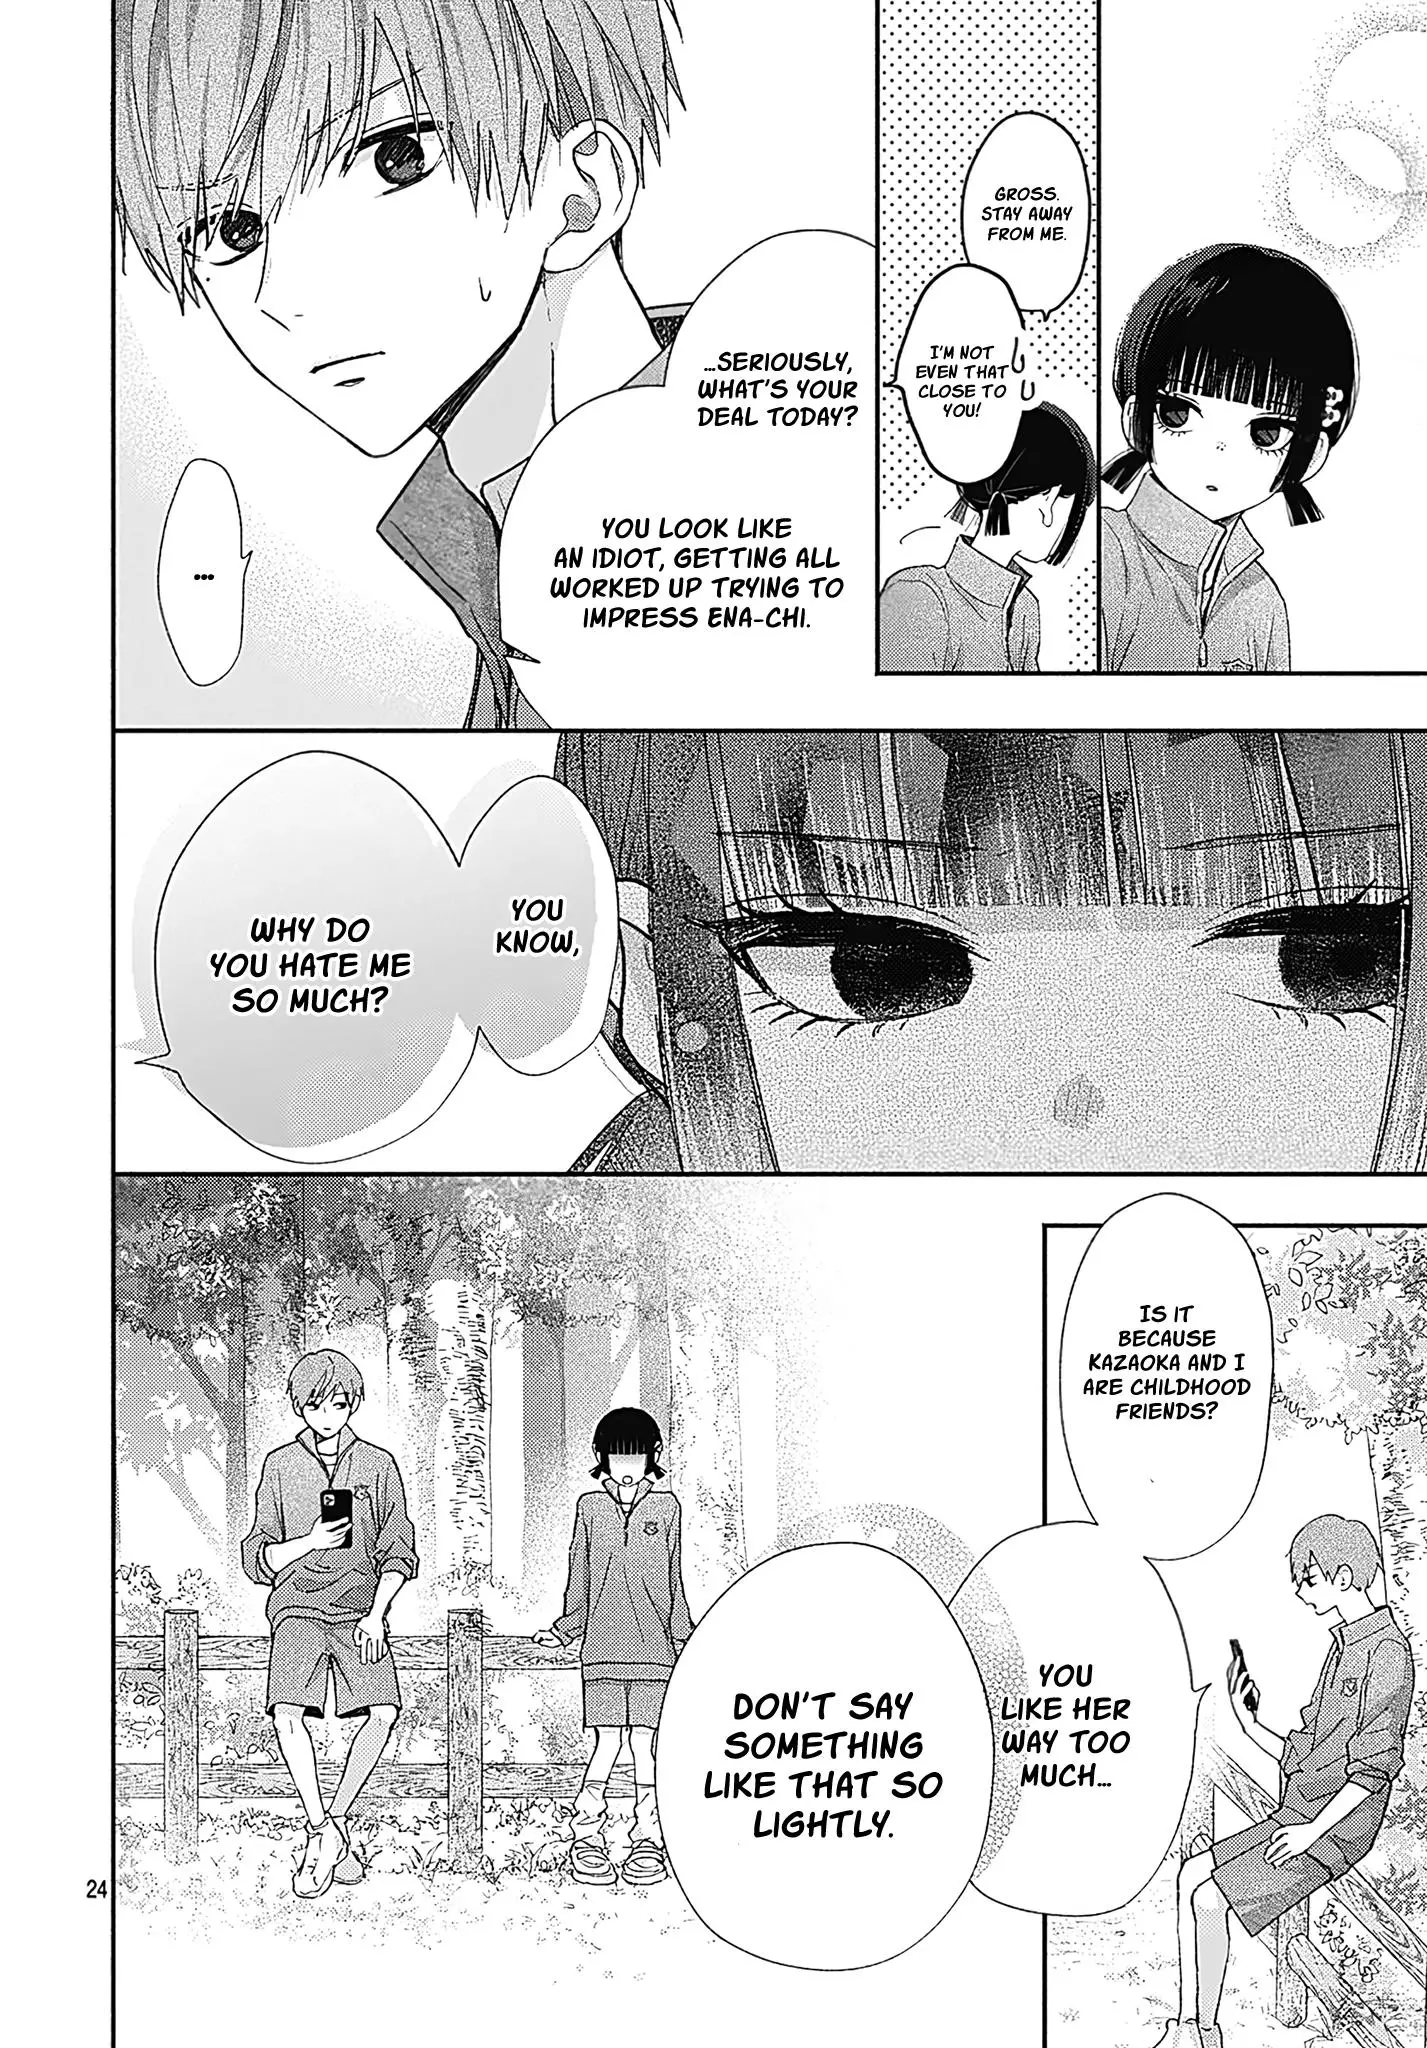 I Hate Komiyama - 4 page 24-4a8459a2